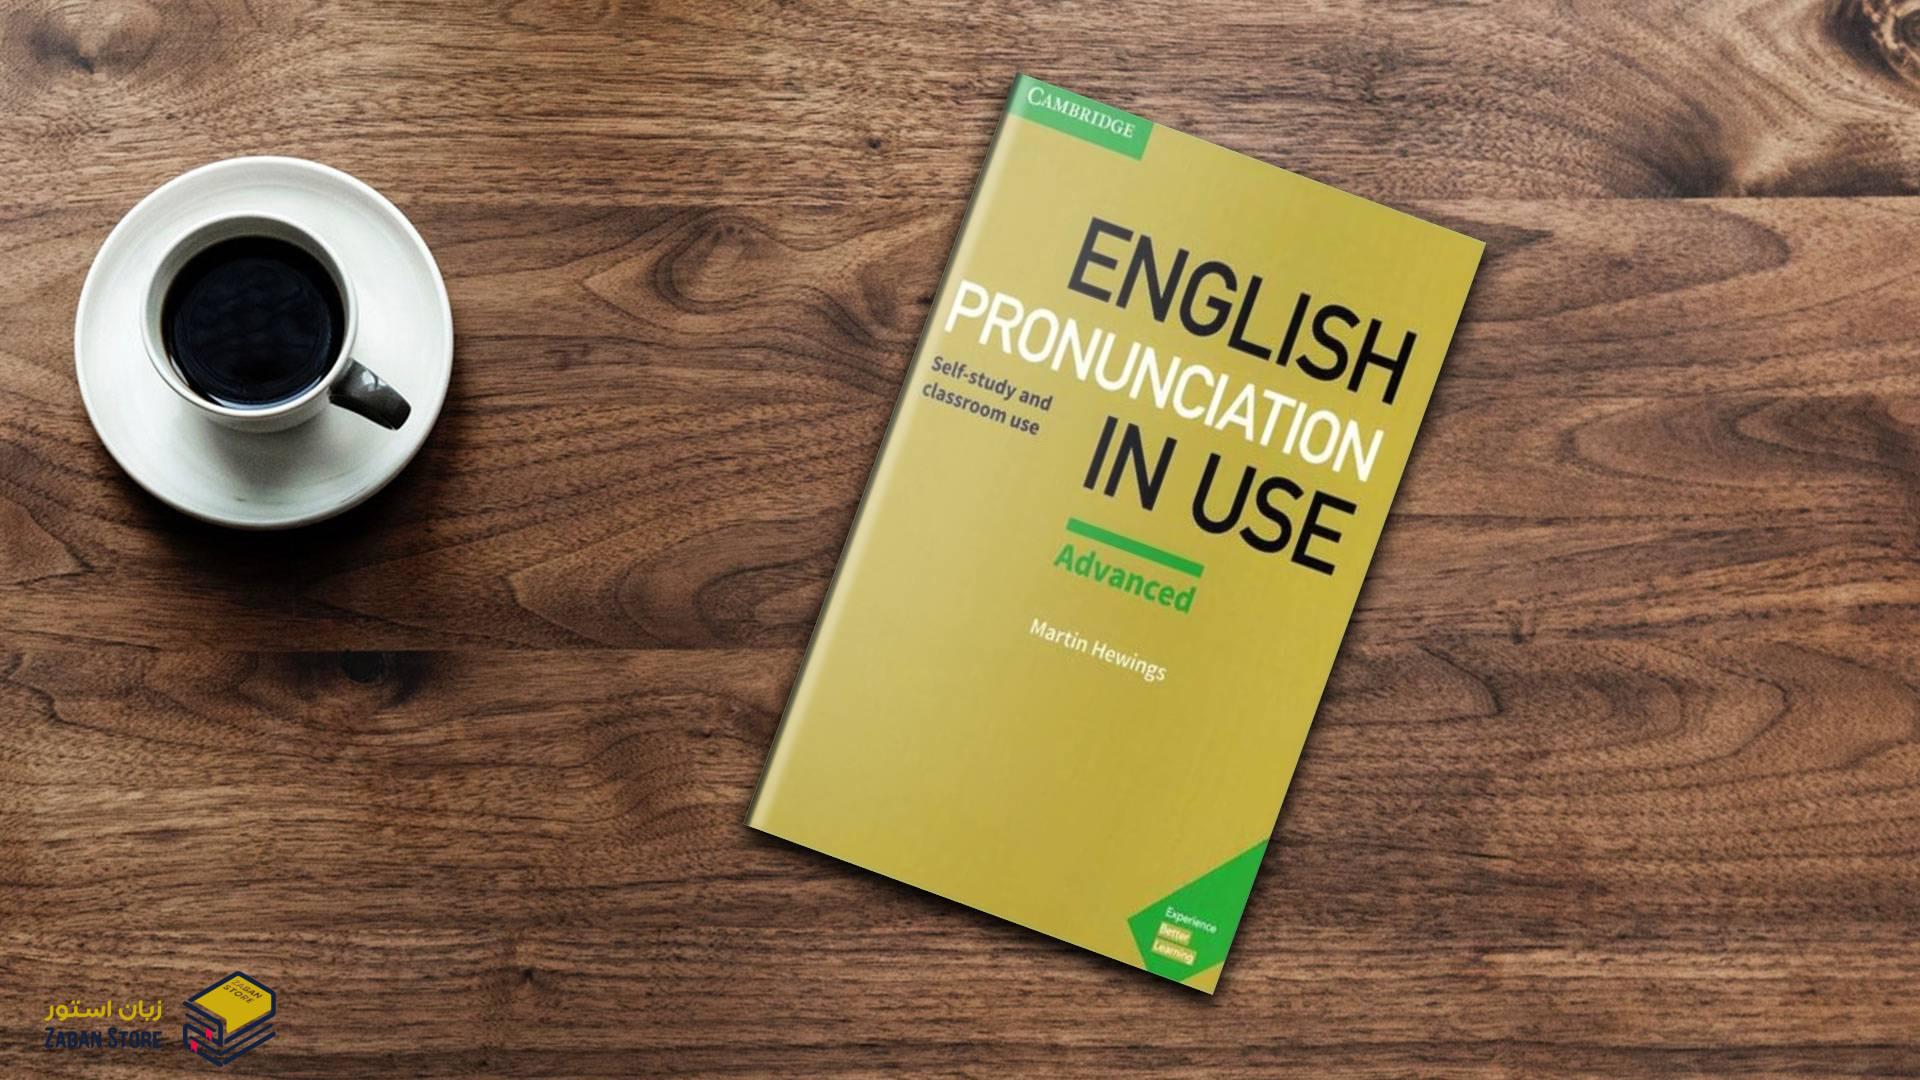 خرید کتاب زبان | فروشگاه اینترنتی کتاب زبان | English Pronunciation in Use Advanced Second Edition | انگلیش پرونانسیشن این یوز ادونس ویرایش دوم